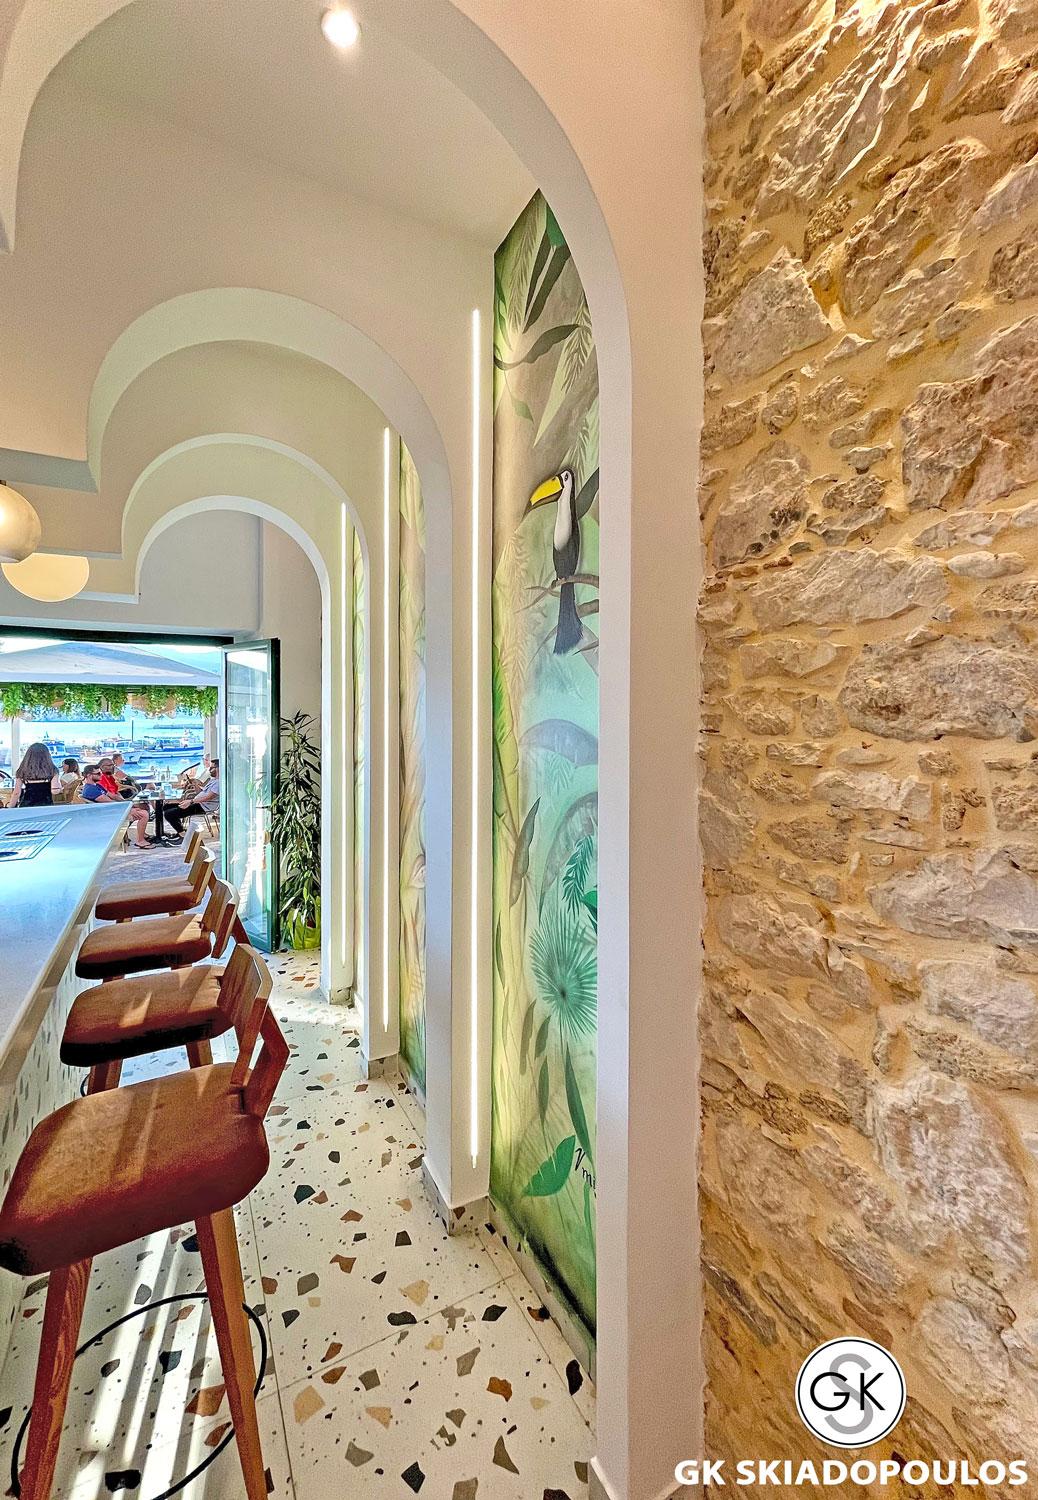 NUEVO café bar restaurant Interior Design - 8